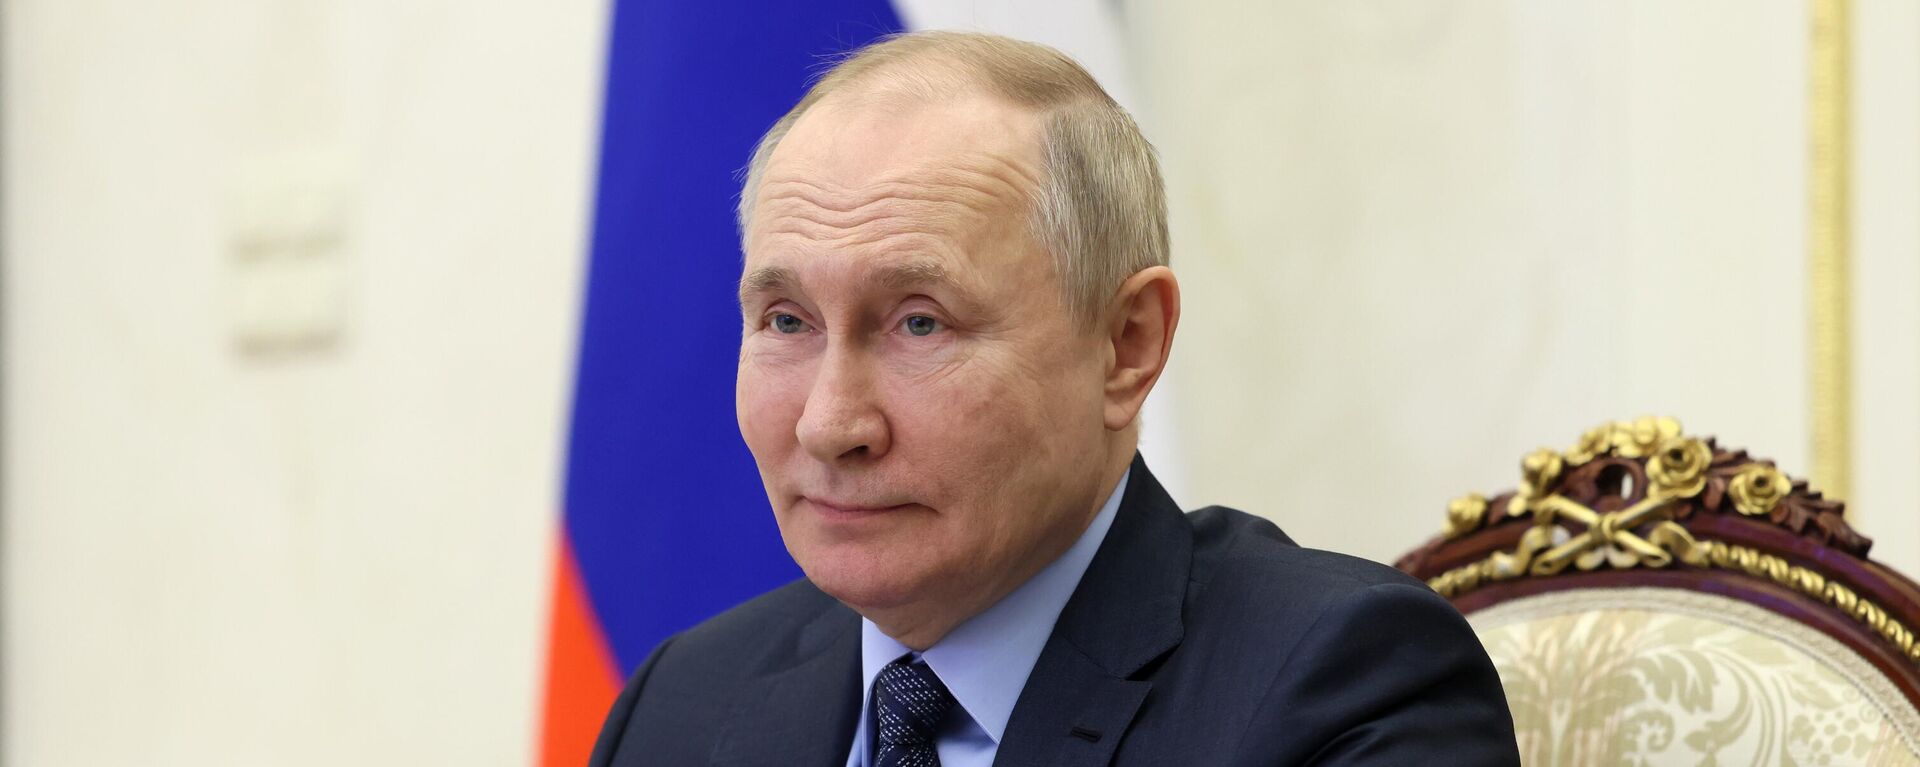 Tổng thống Nga Vladimir Putin đã tham gia lễ khai trương các cơ sở xã hội như một phần của các chương trình phát triển liên bang và khu vực - Sputnik Việt Nam, 1920, 30.11.2022